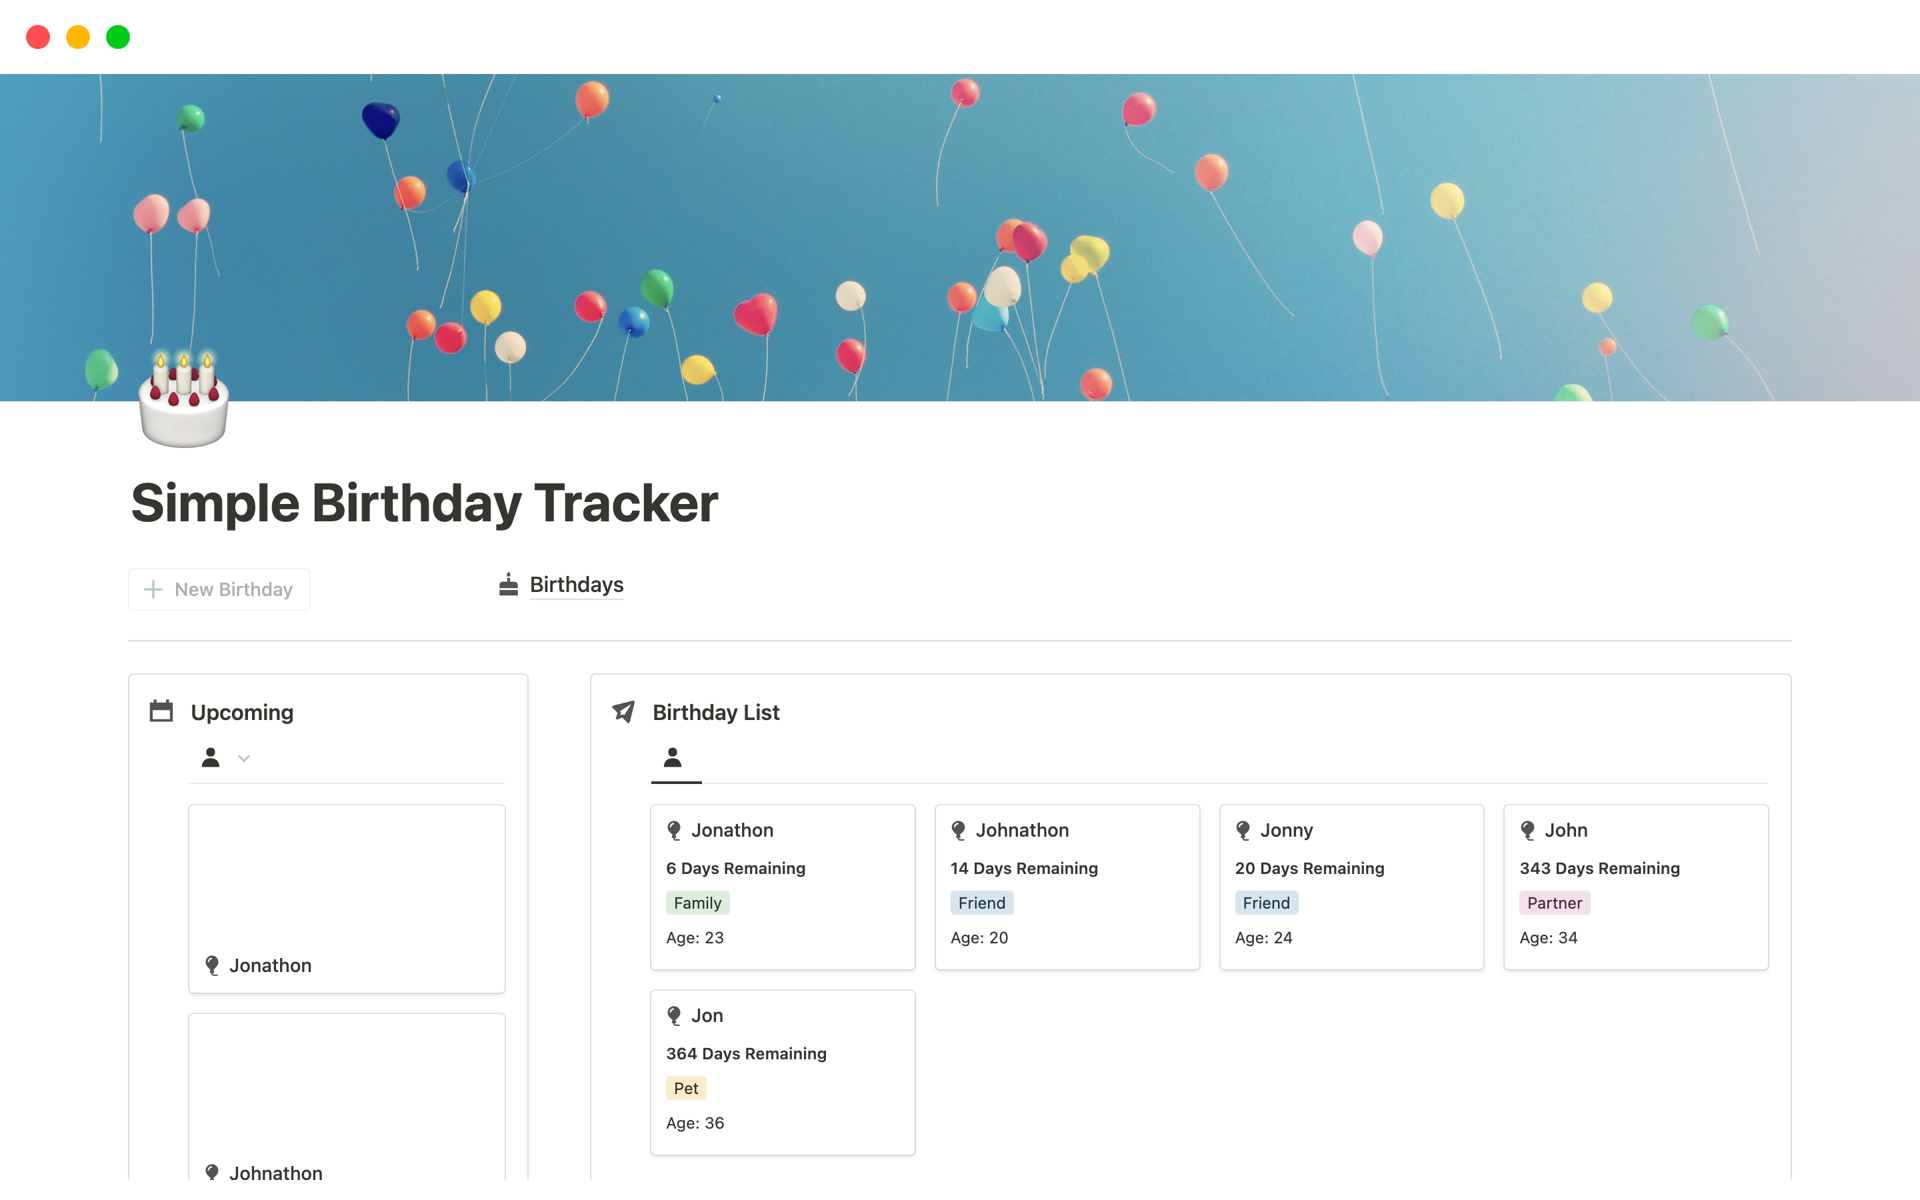 Uma prévia do modelo para Birthday Tracker